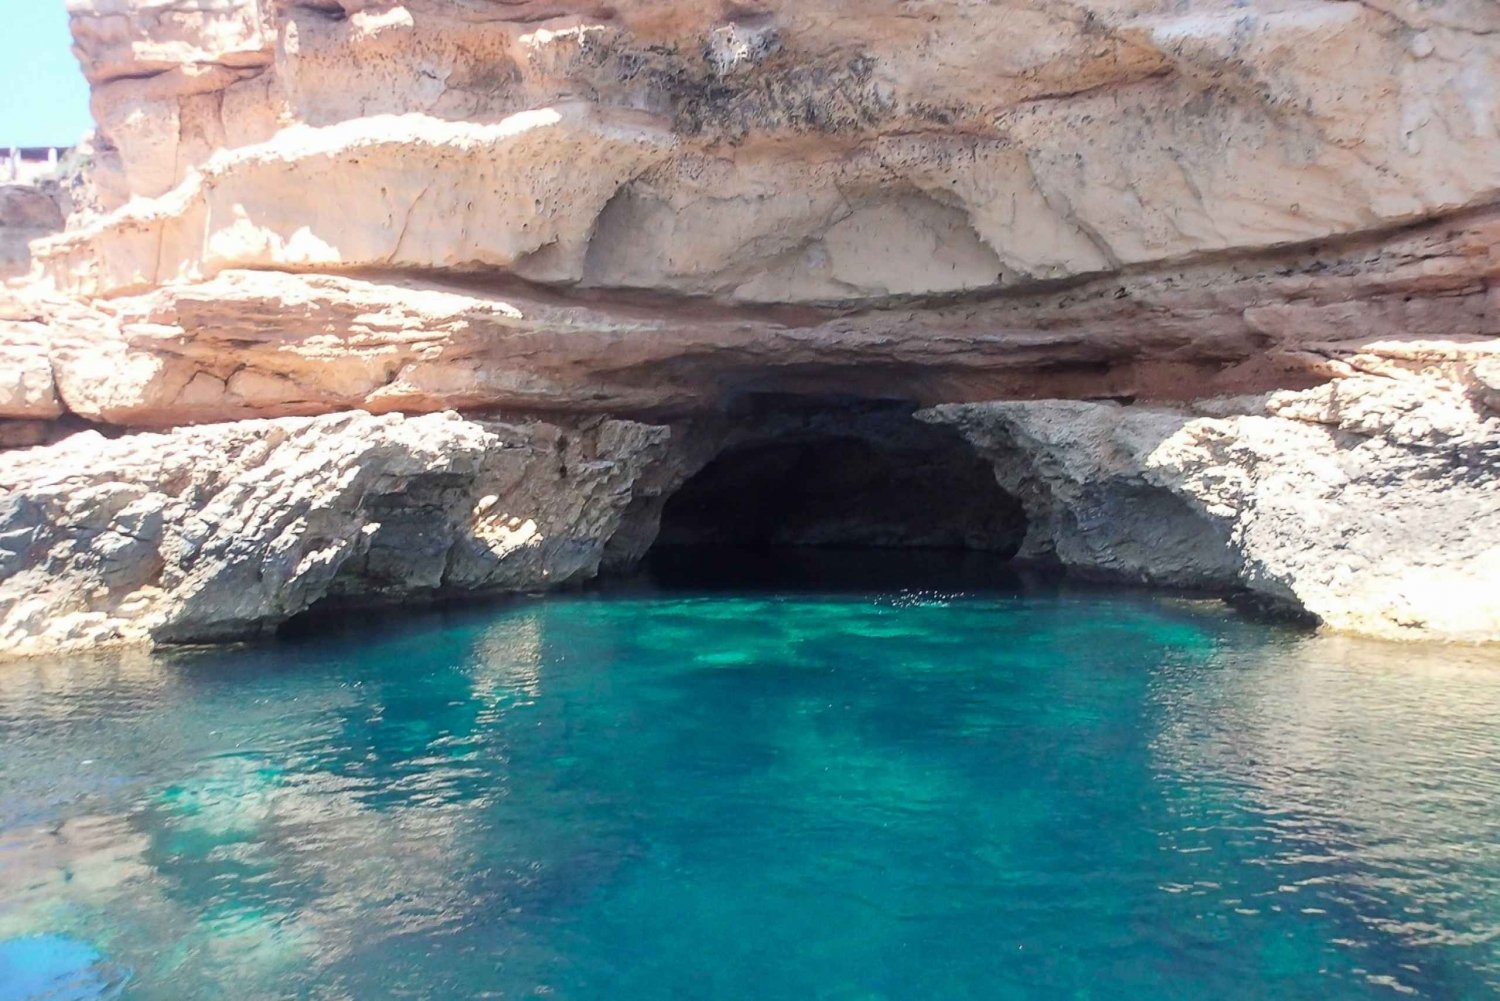 Ibiza: Passeio de barco pelas praias e cavernas no Instagram